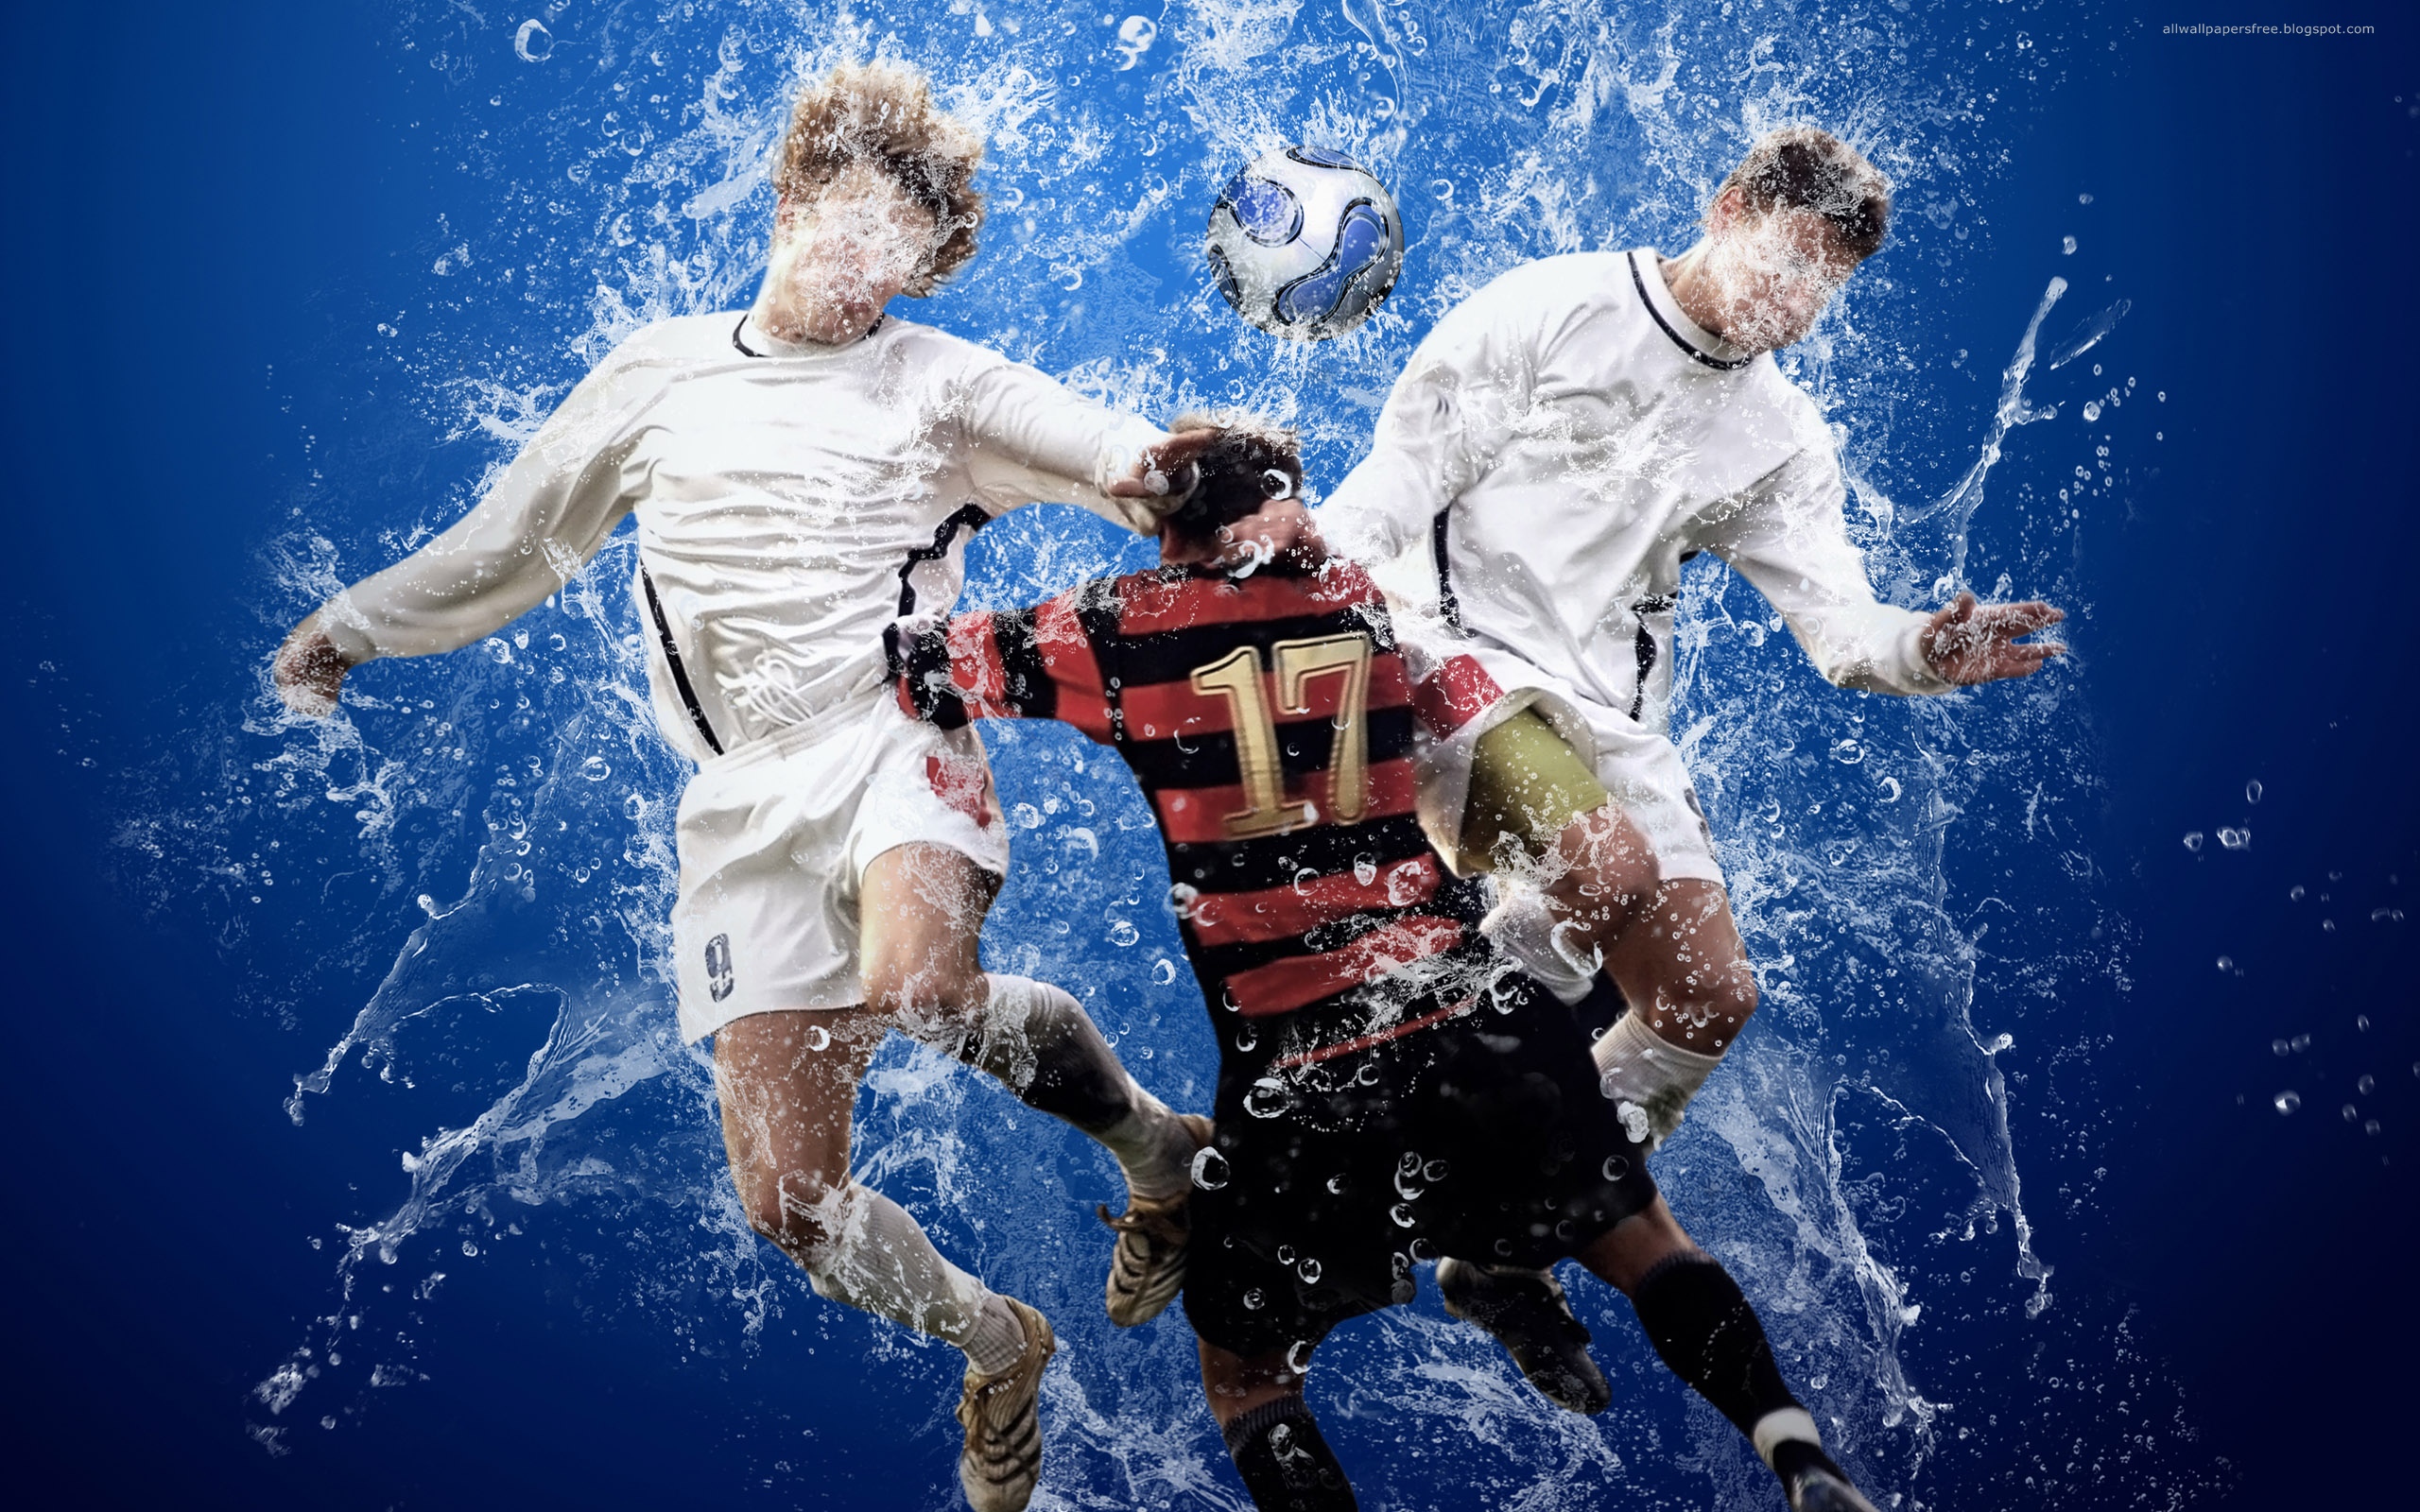 Soccer sports wallpaper for desktop.